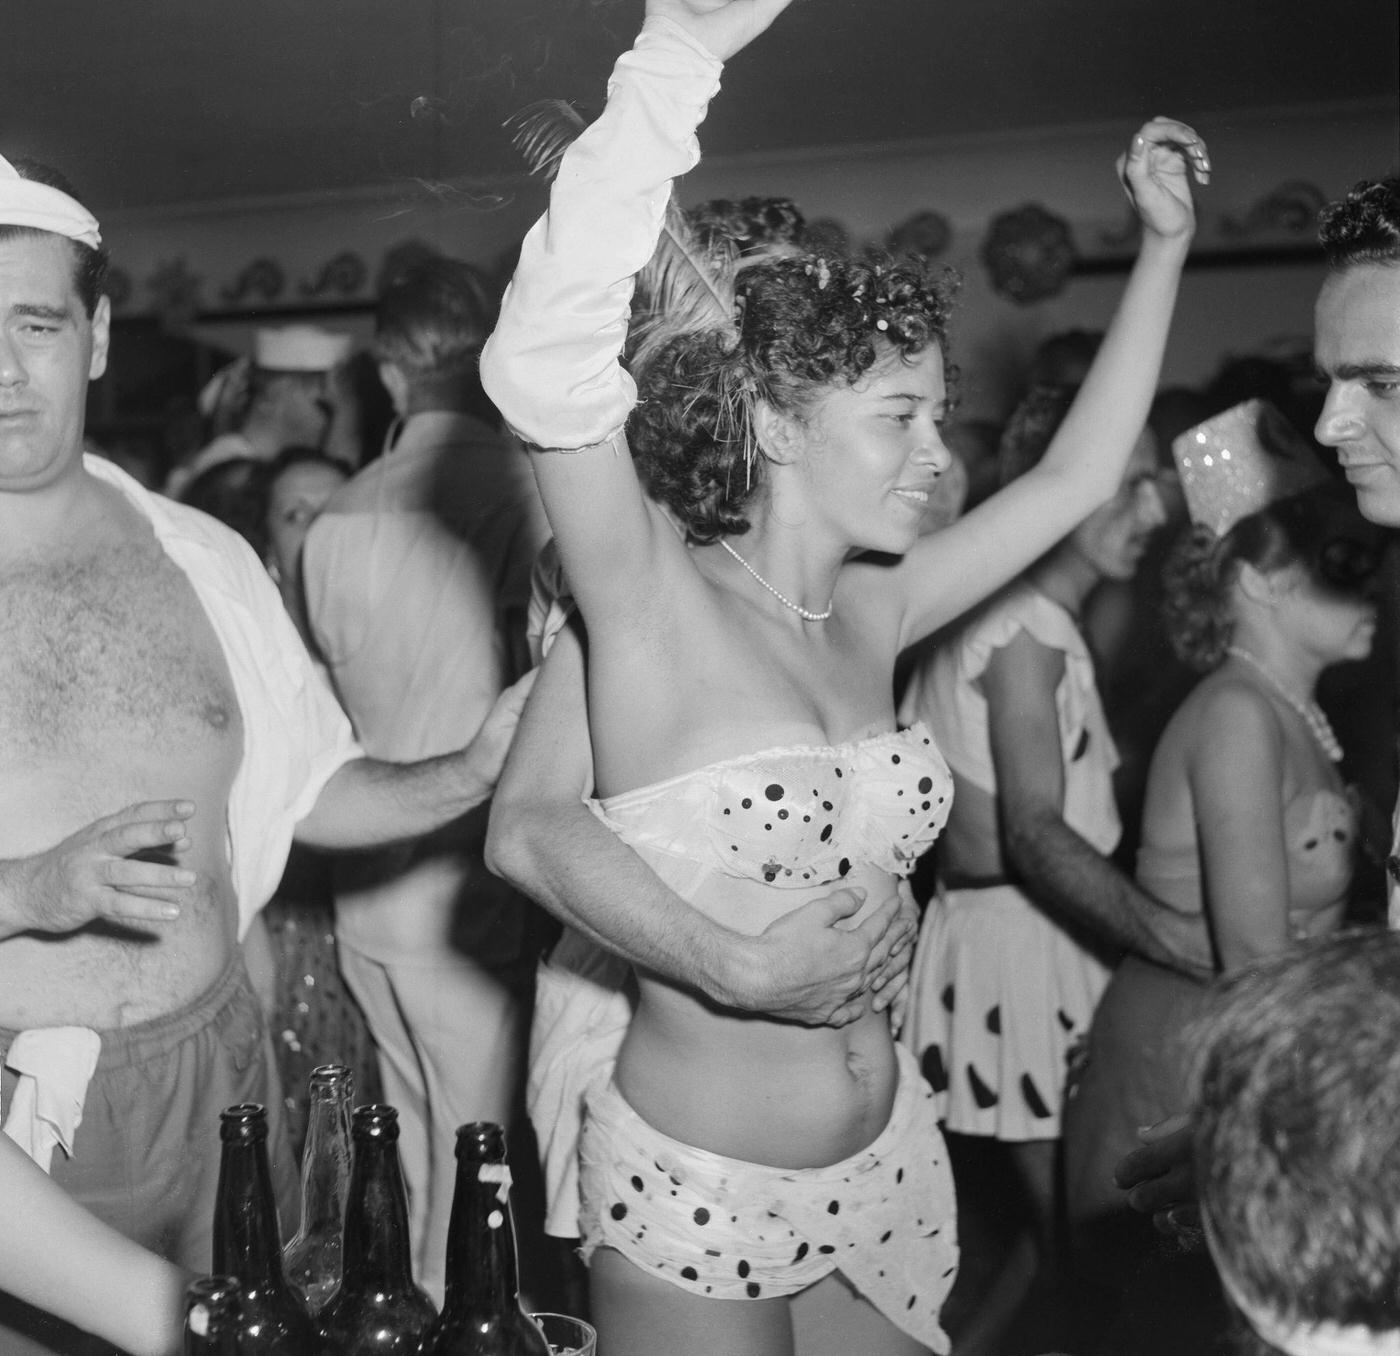 Costume Partygoer Dancing, Rio Carnival 1953